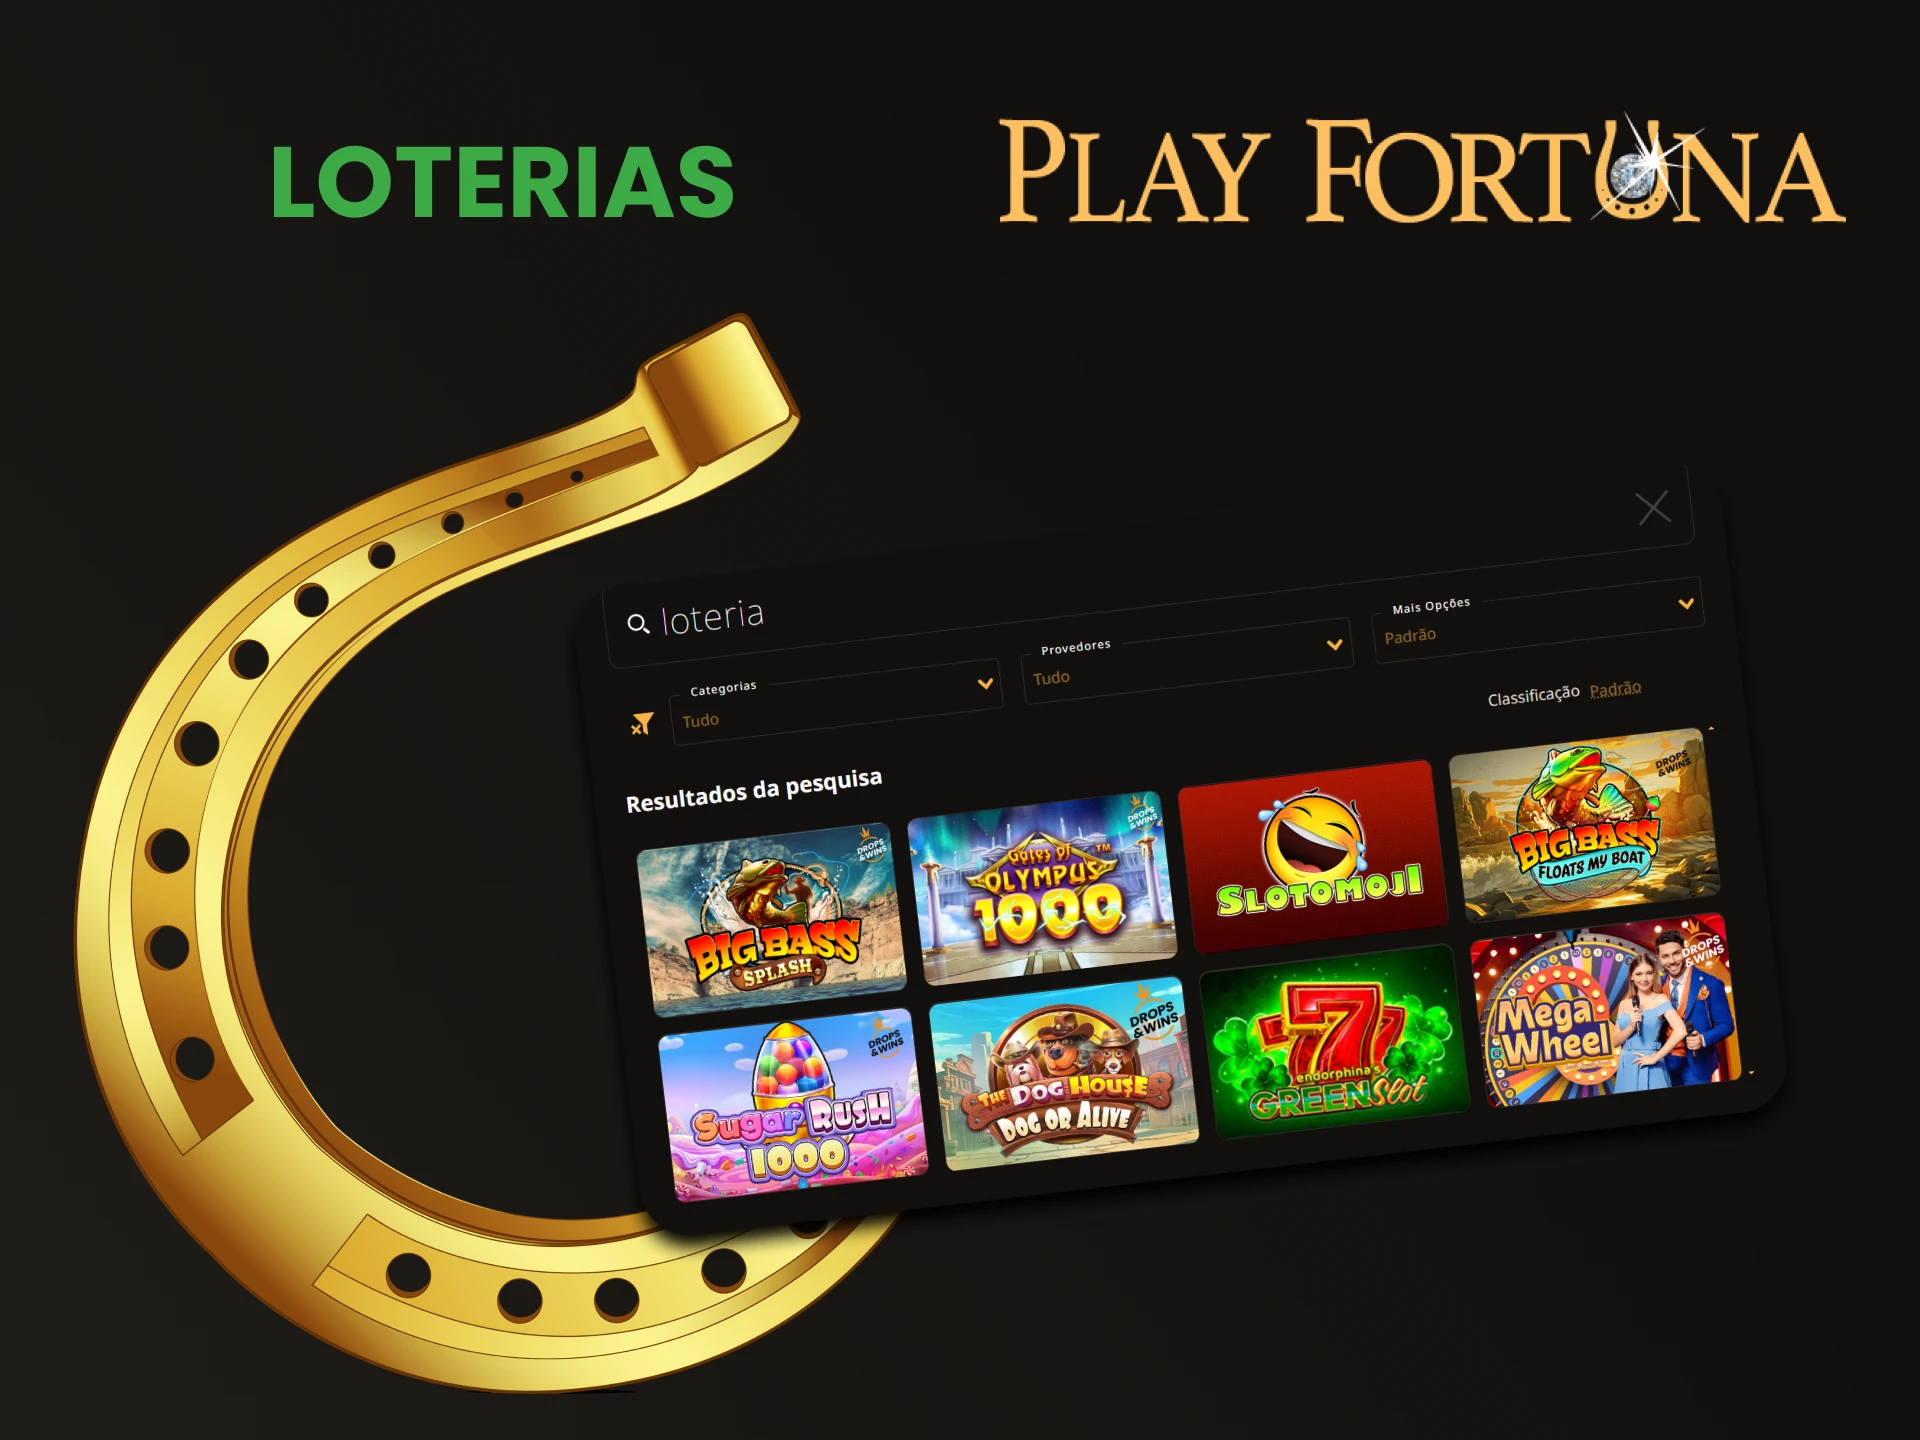 Jogue na loteria no site Play Fortuna.